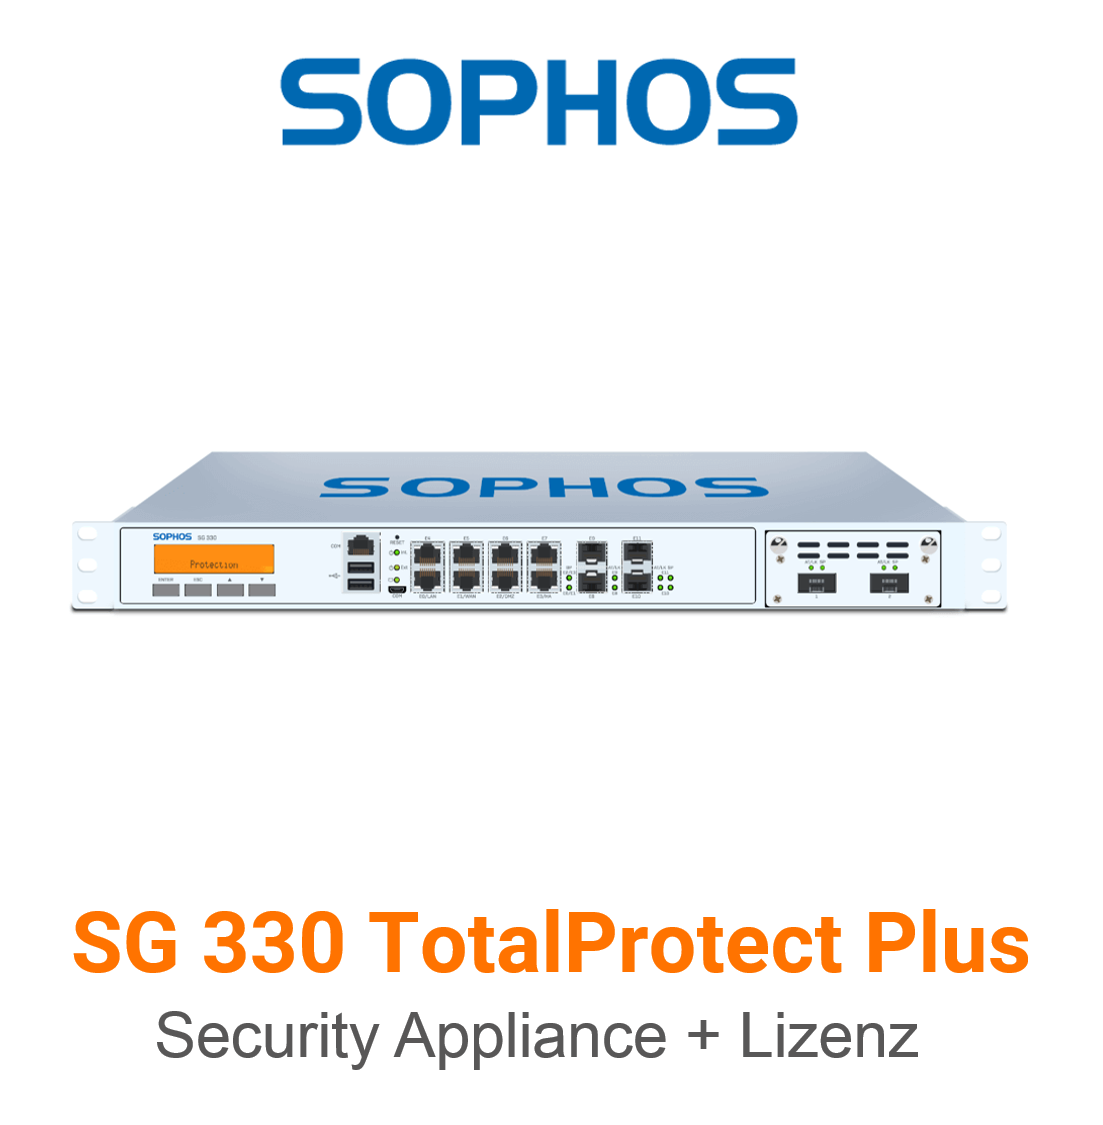 Sophos SG 330 TotalProtect Plus Bundle (Hardware + Lizenz)